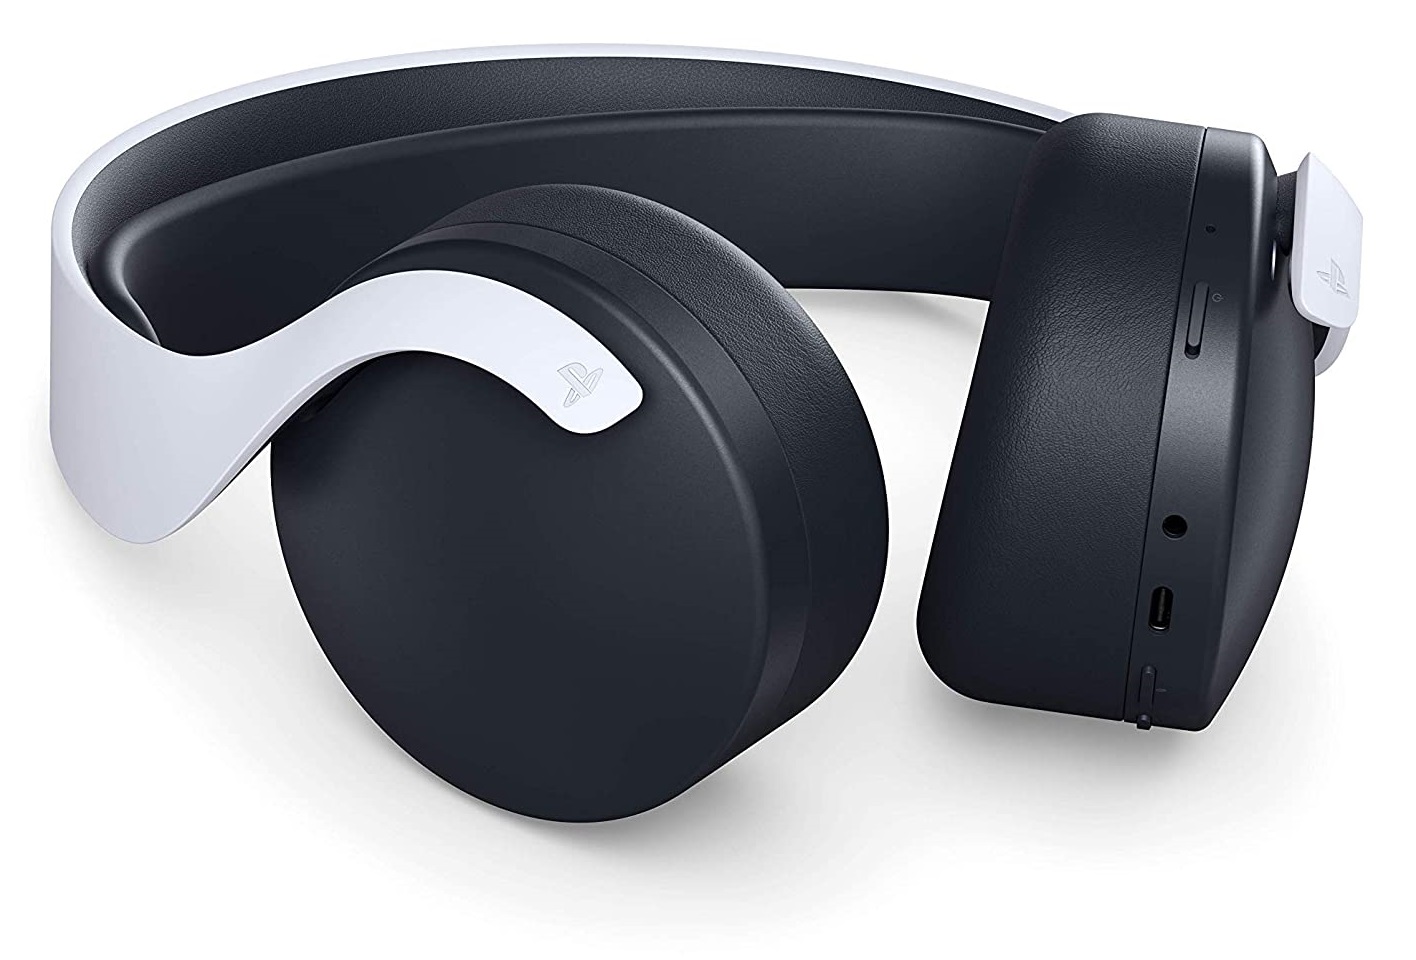 Pulse 3D PS5 Wireless Headphones - DiscoAzul.com